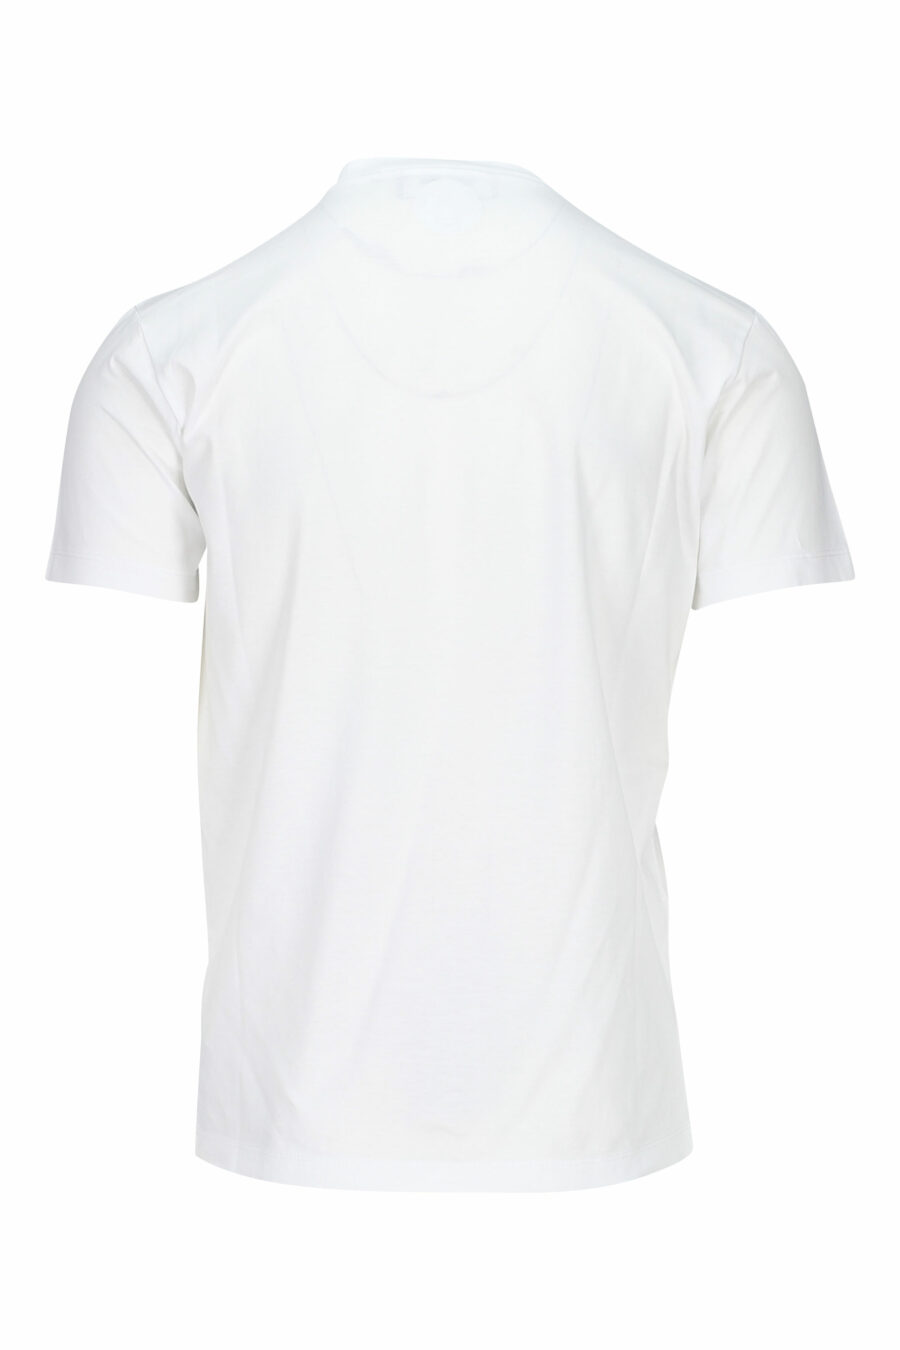 T-shirt blanc avec maxilogo rgb - 8052134941089 1